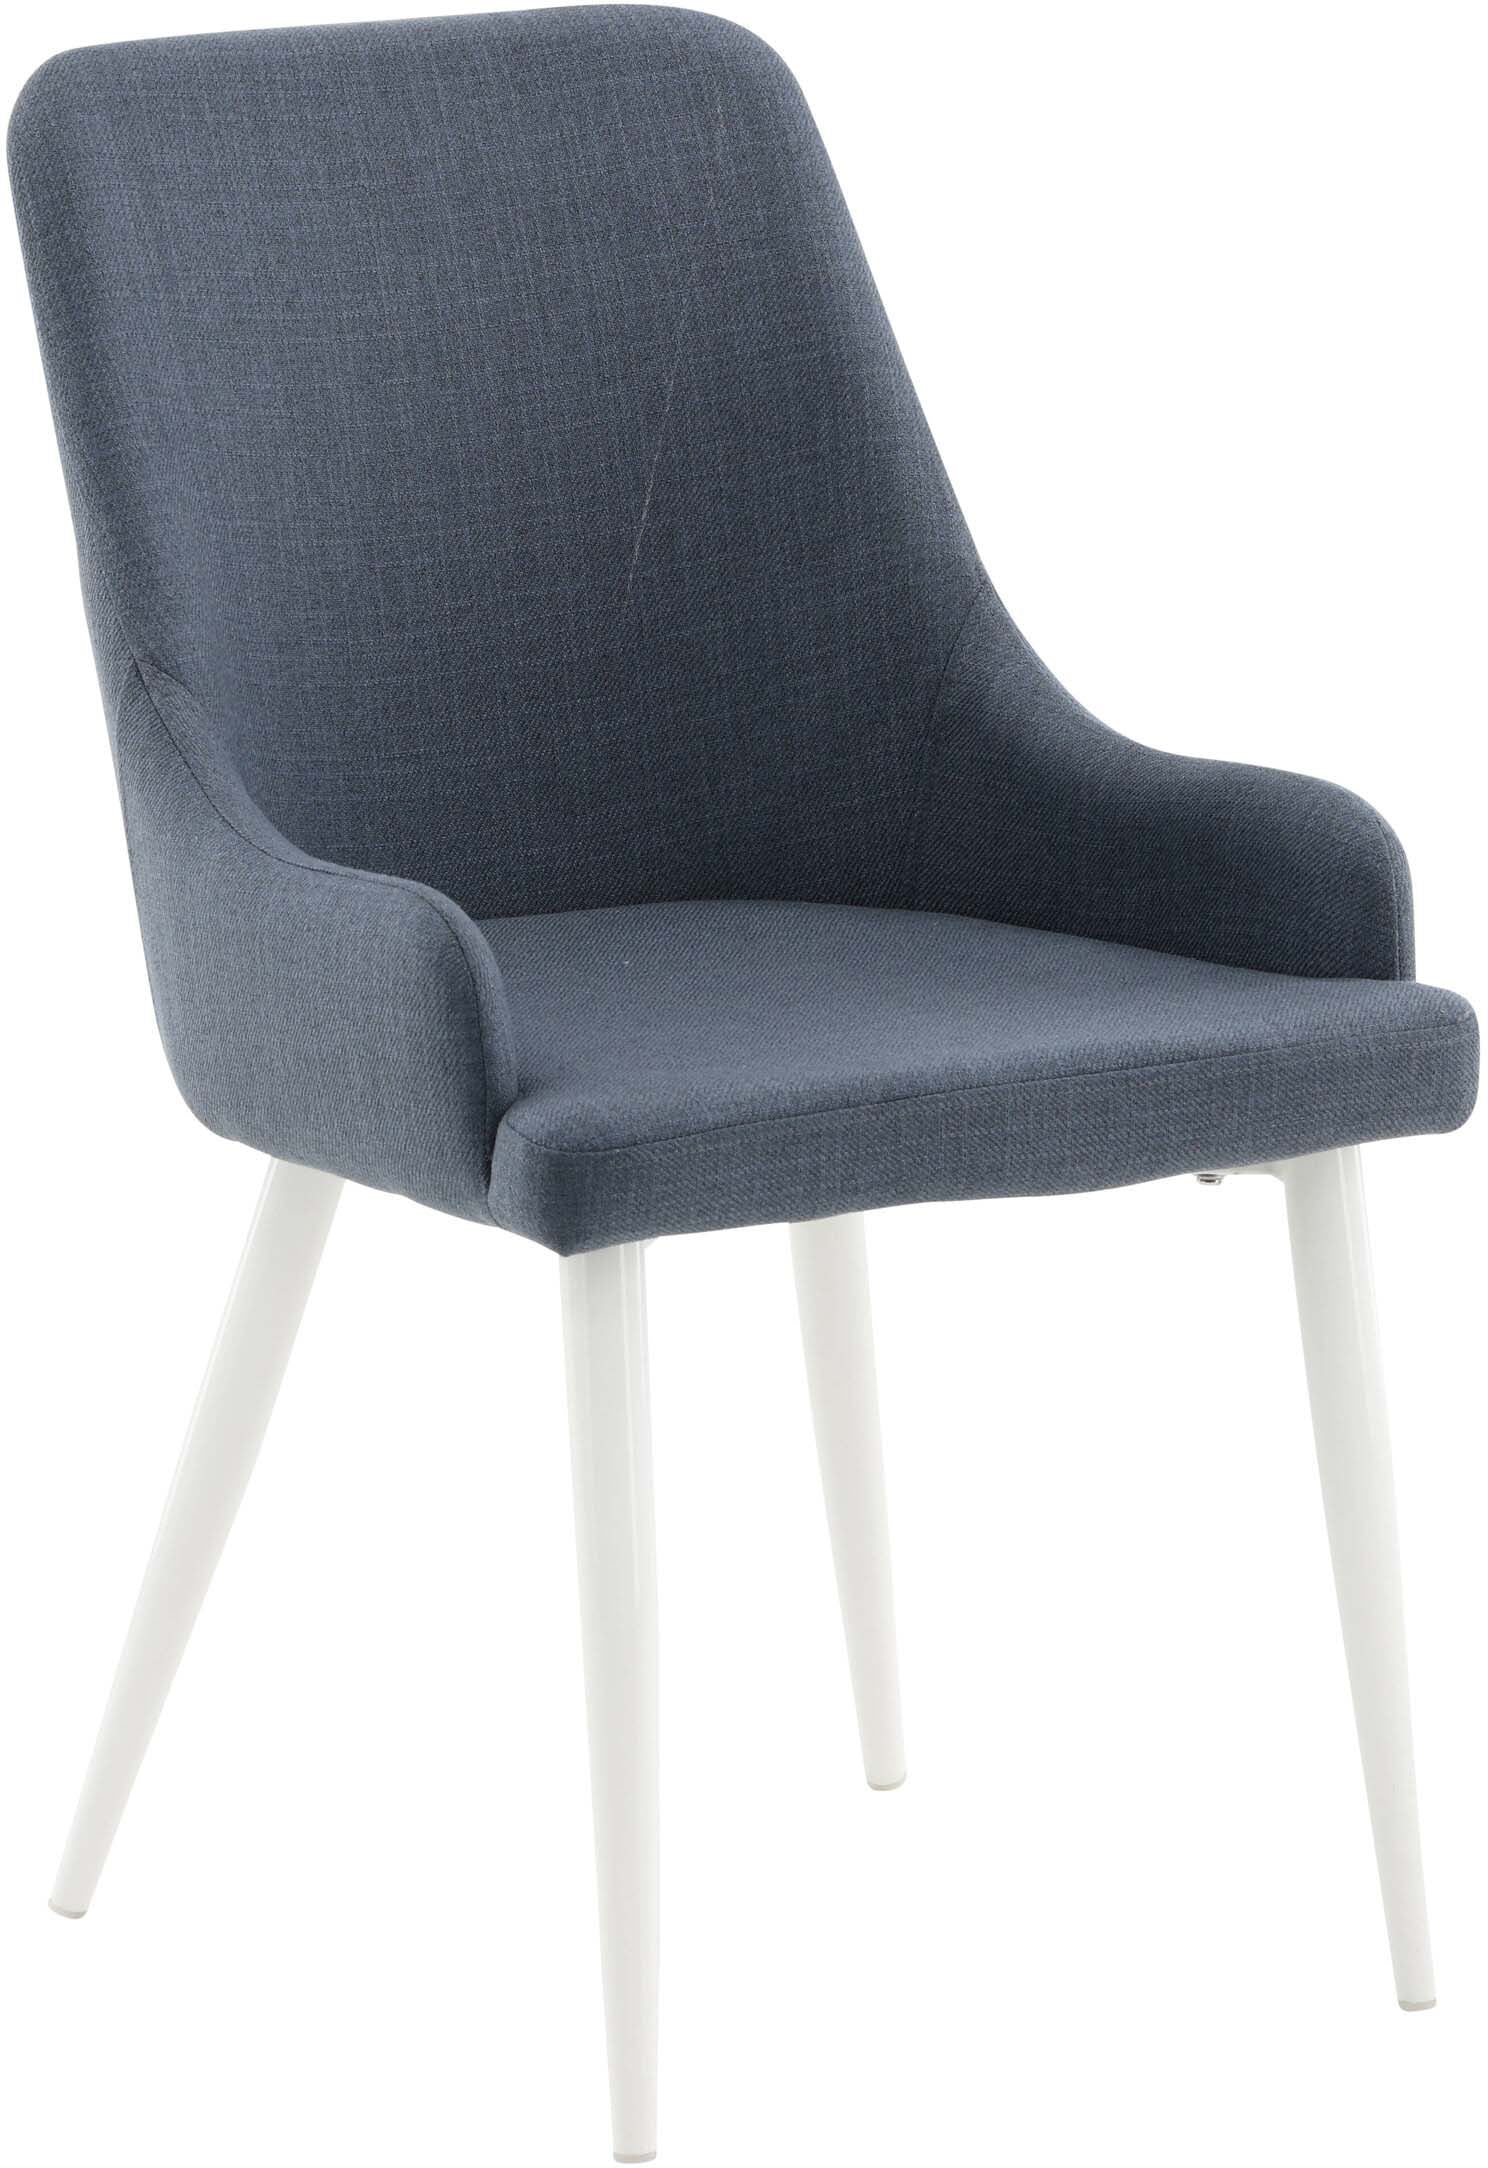 Plaza Stuhl in Blau / Weiss präsentiert im Onlineshop von KAQTU Design AG. Stuhl ist von Venture Home